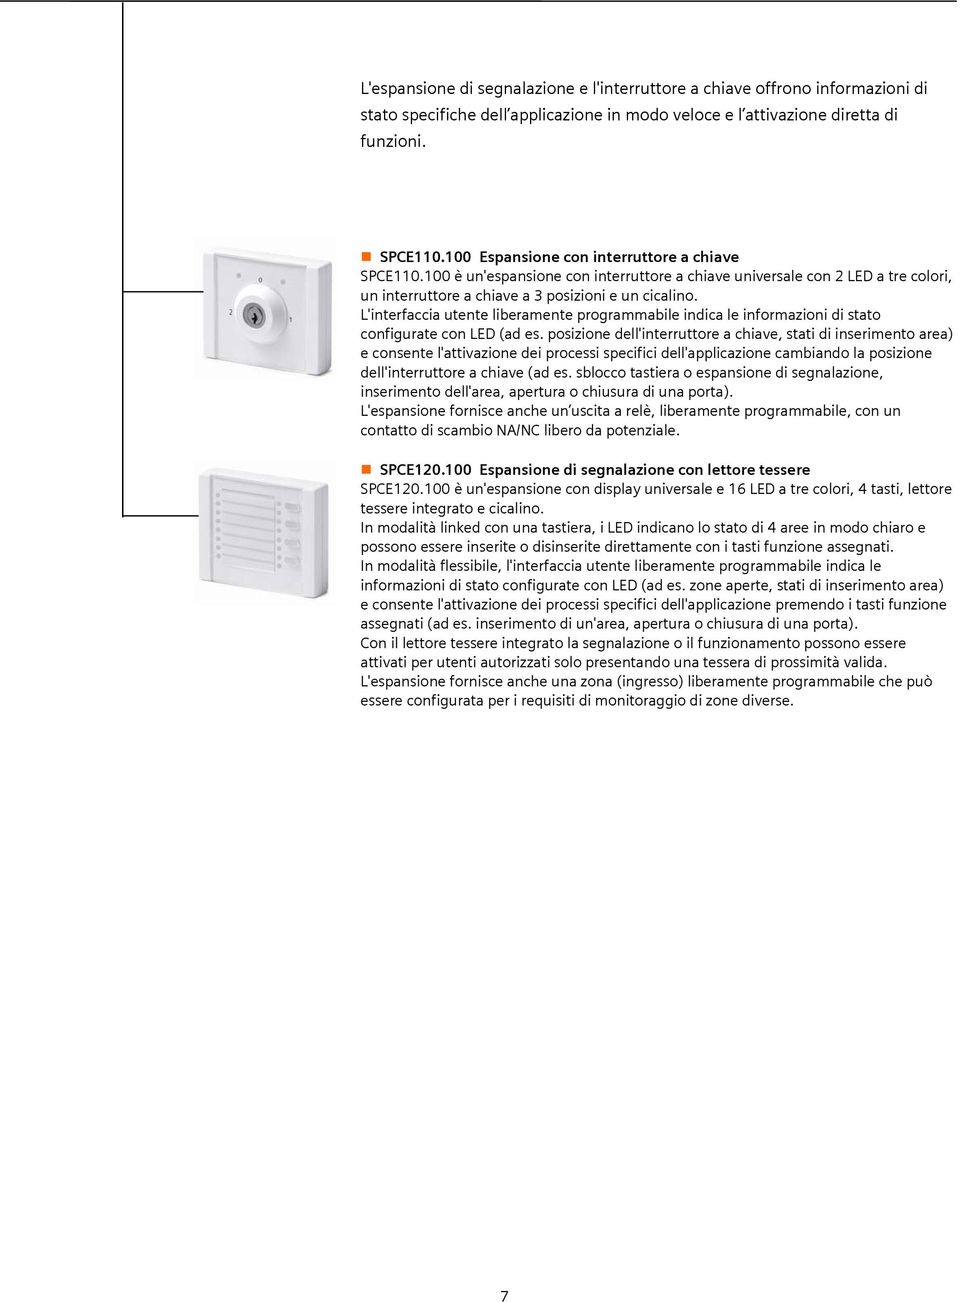 L'interfaccia utente liberamente programmabile indica le informazioni di stato configurate con LED (ad es.